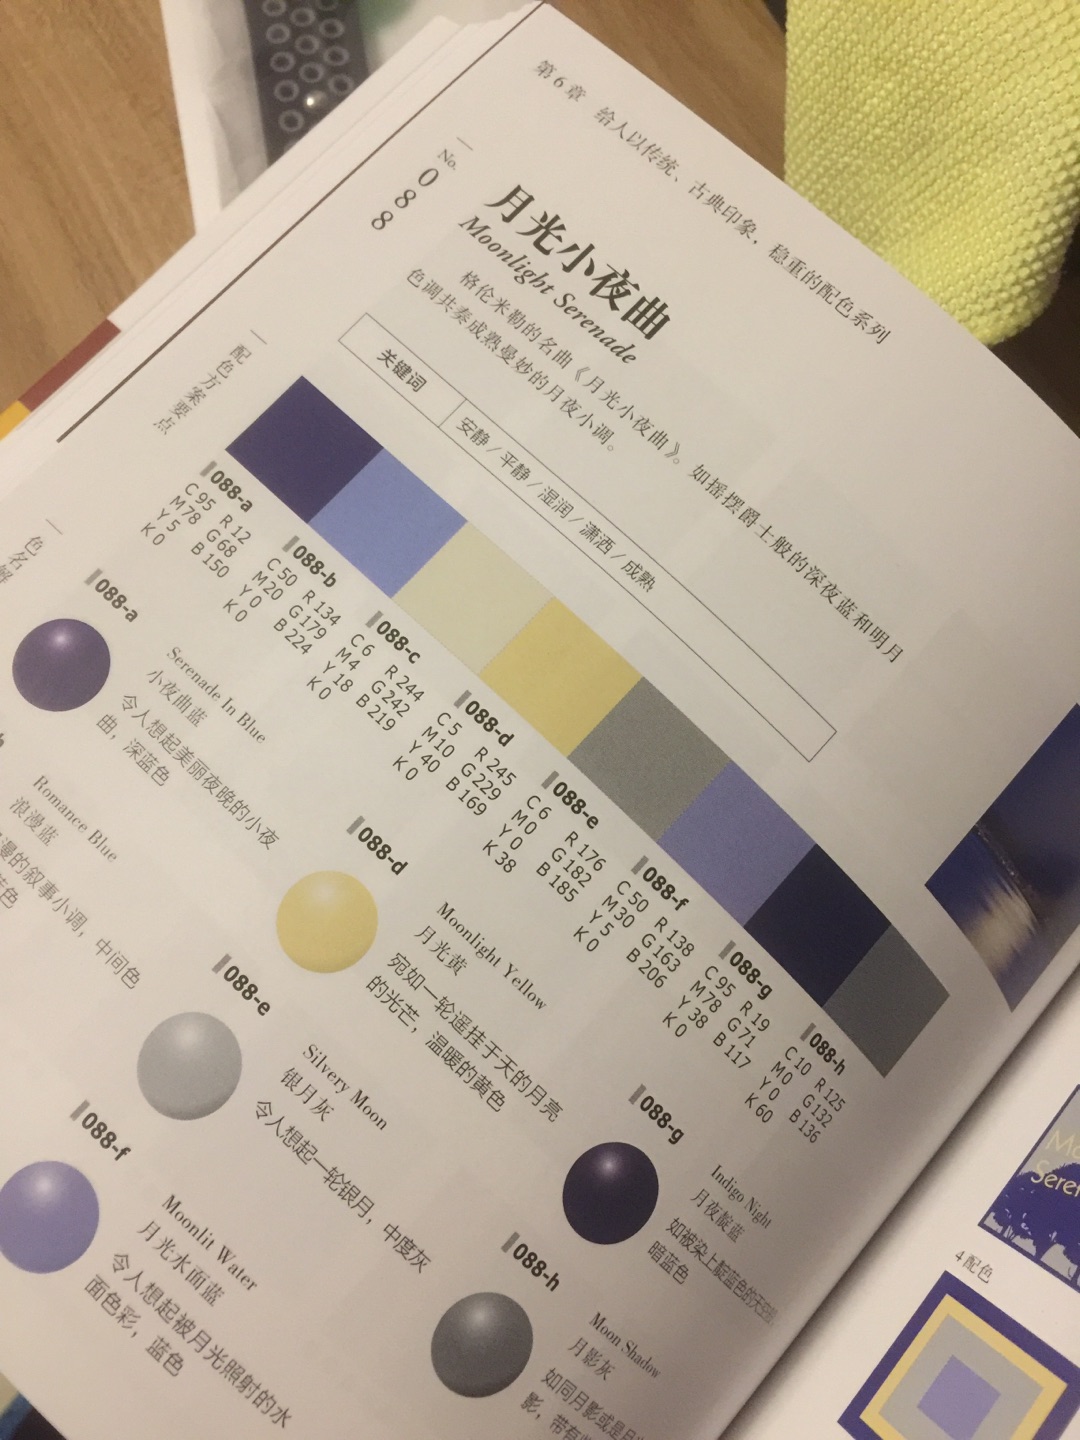 挺有用的速查颜色工具书。